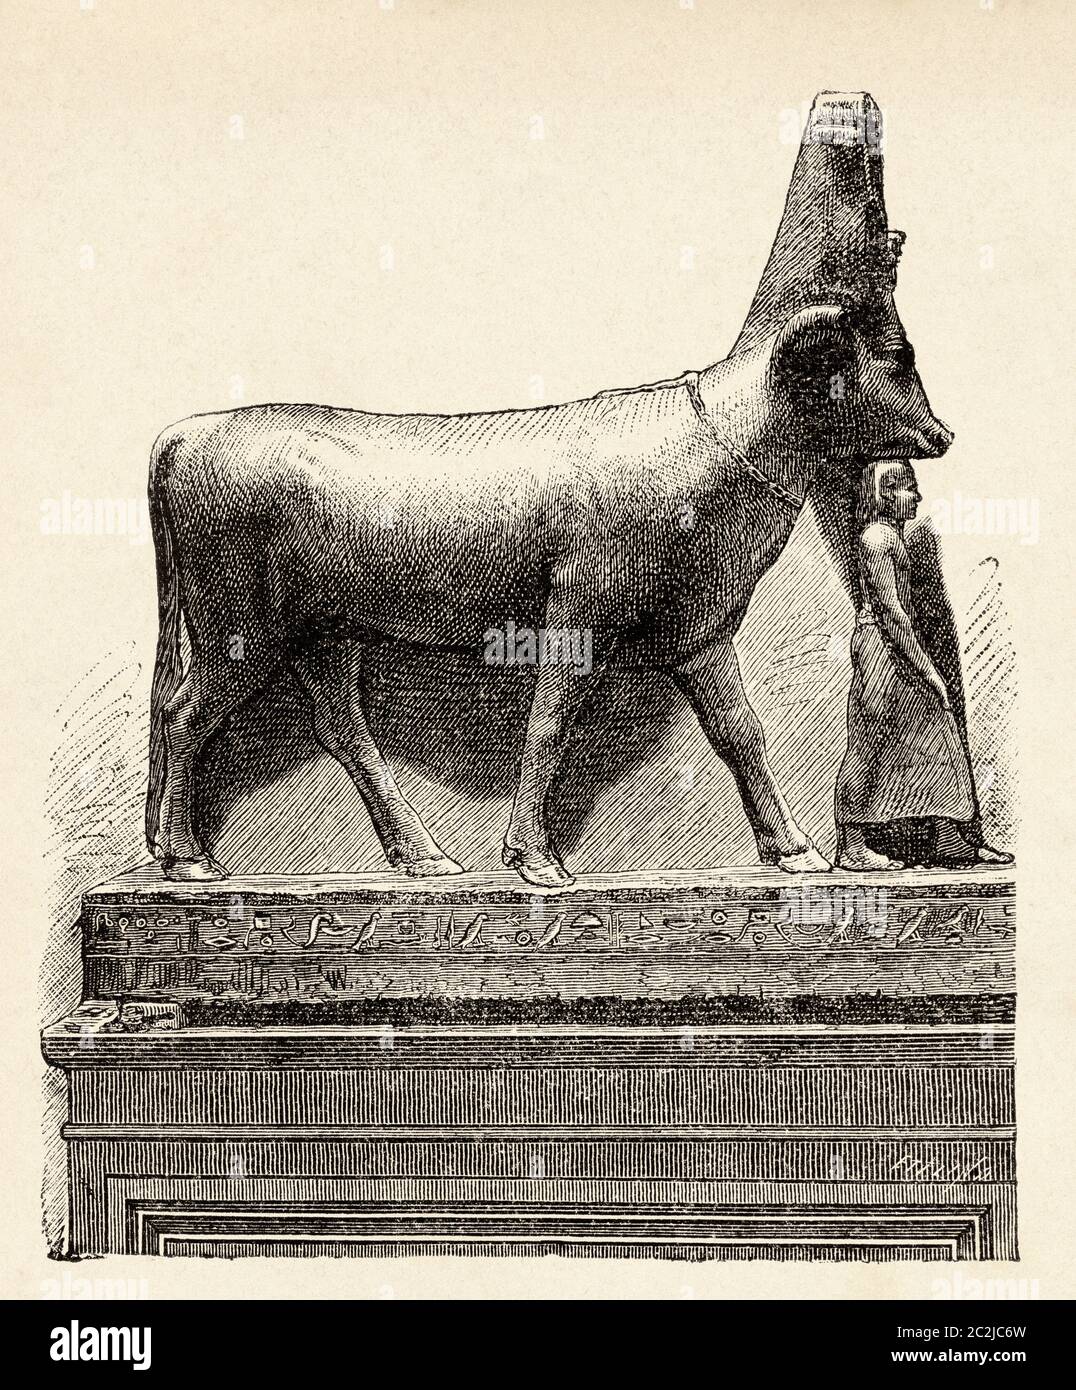 Die Göttin Hathor in Form einer heiligen Kuh, das alte Ägypten. Alte Illustration aus dem 19. Jahrhundert, El Mundo Ilustrado 1880 Stockfoto